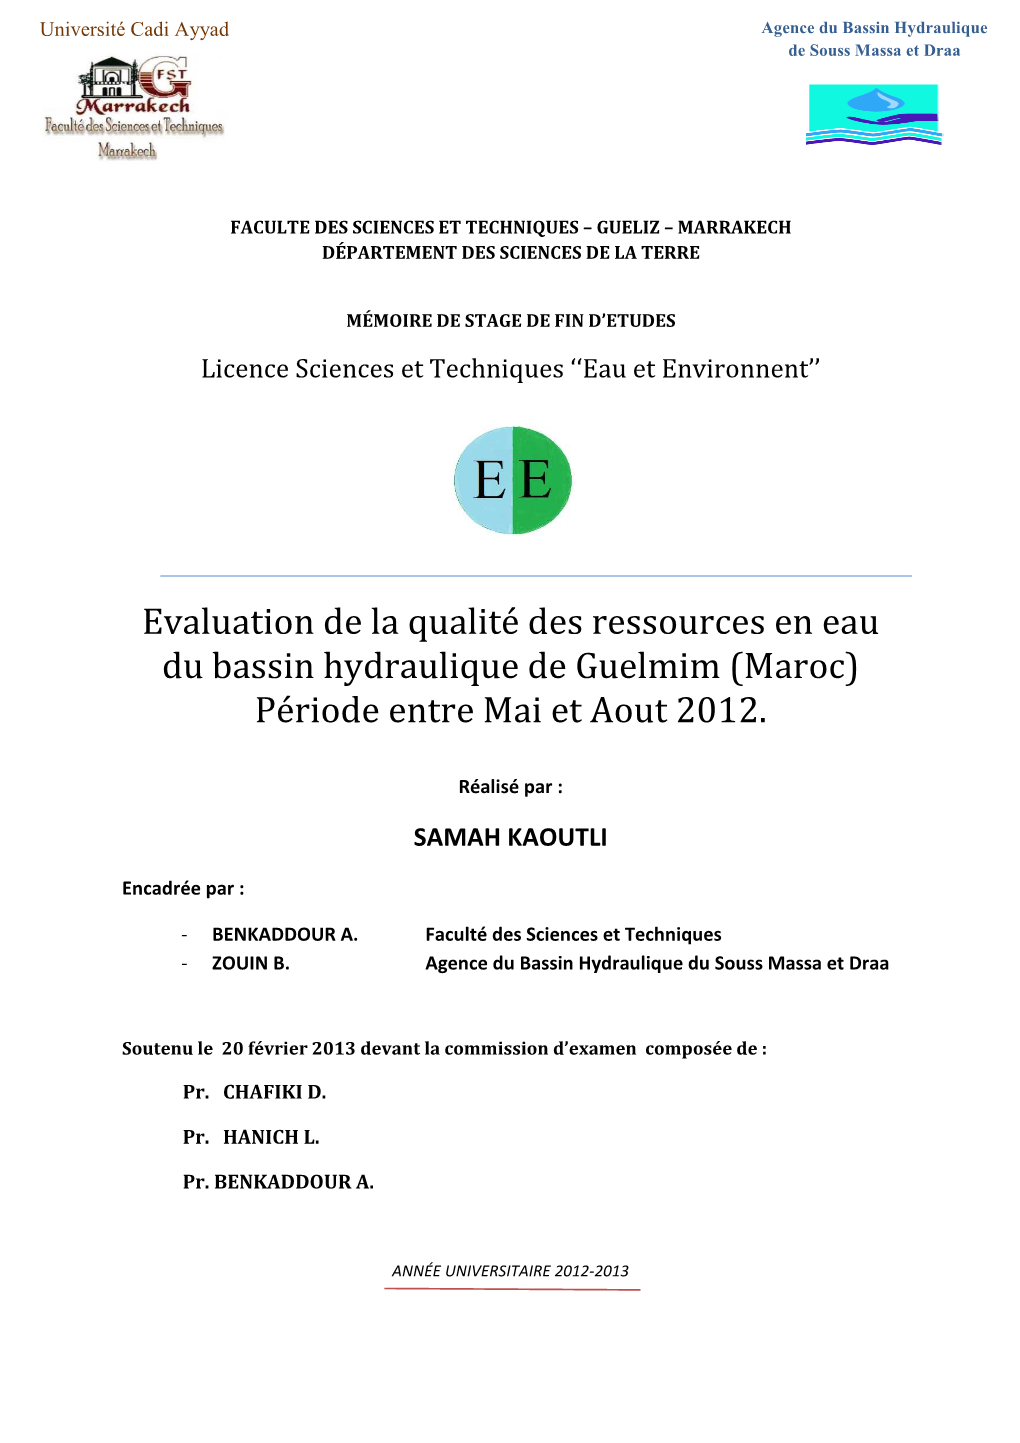 Evaluation De La Qualité Des Ressources En Eau Du Bassin Hydraulique De Guelmim (Maroc) Période Entre Mai Et Aout 2012